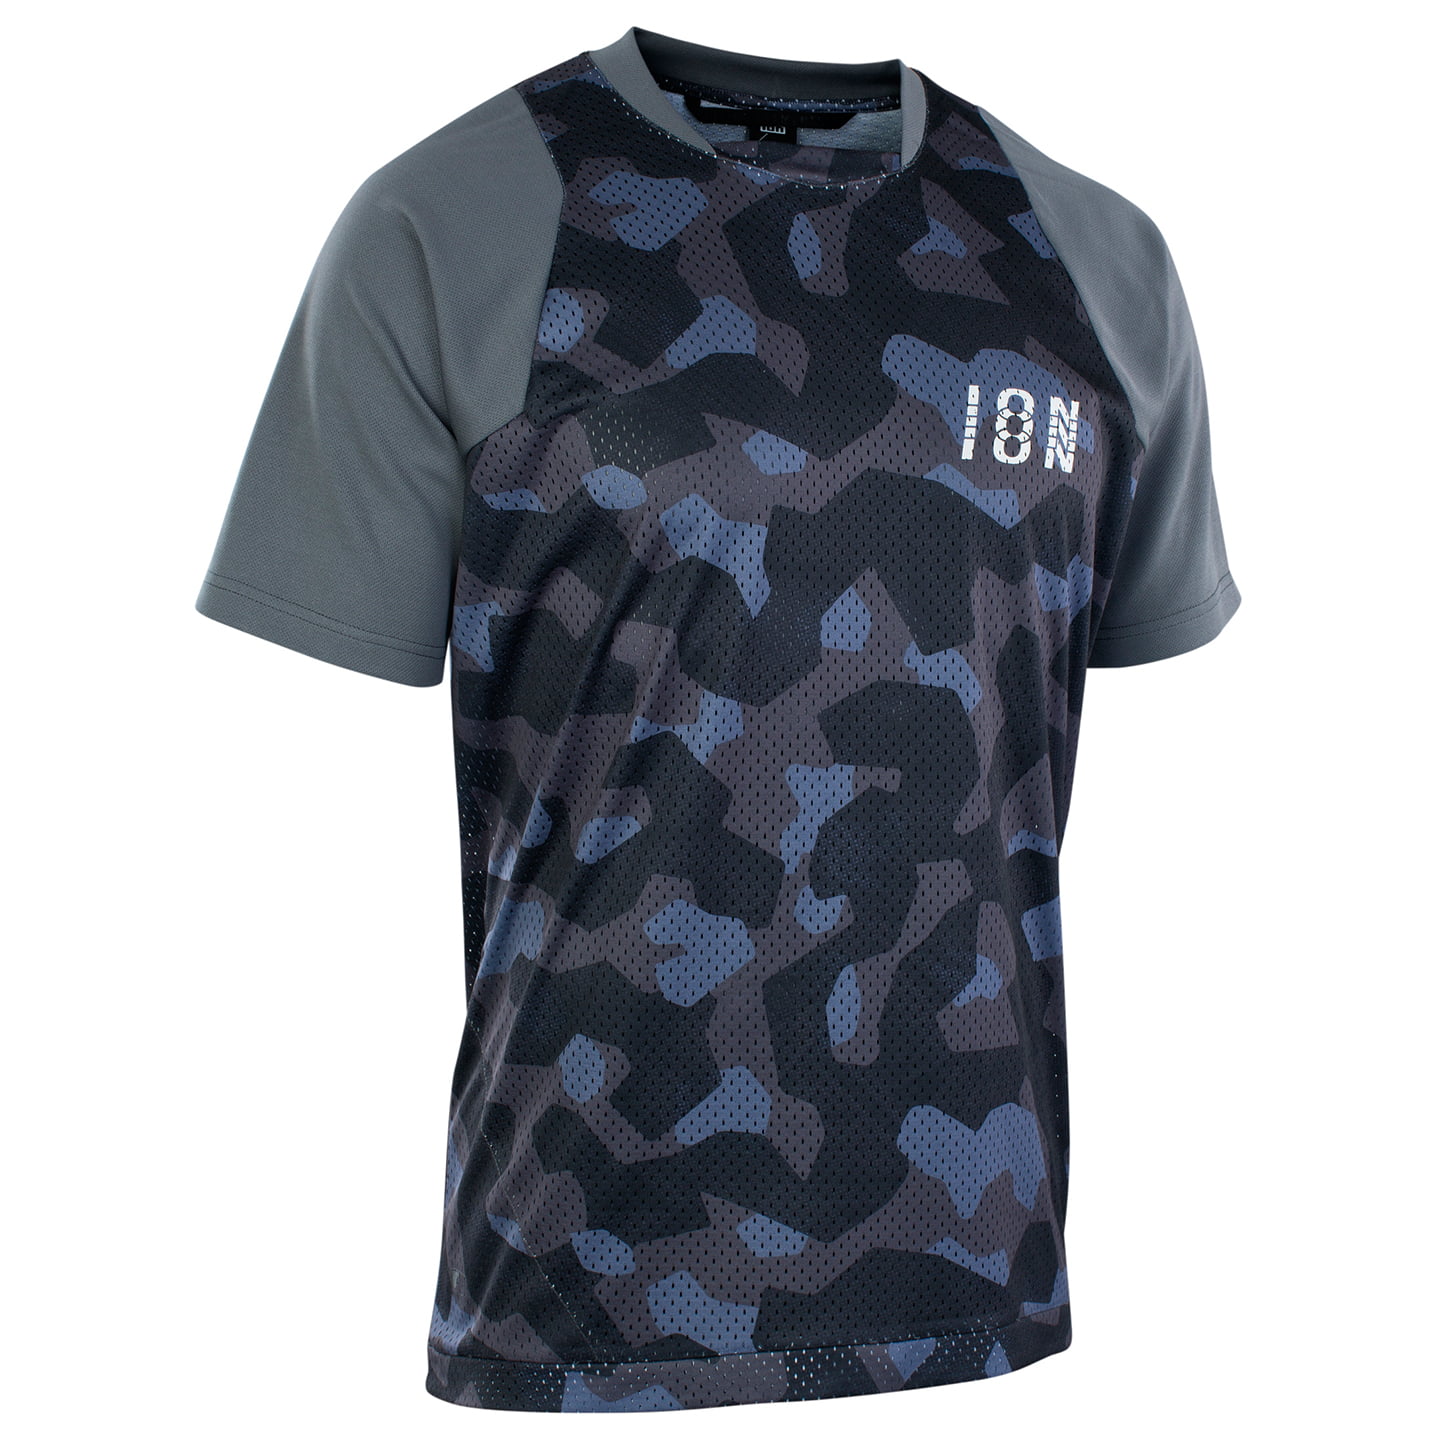 ION Scrub Bike Shirt, for men, size M, Cycling jersey, Cycling clothing